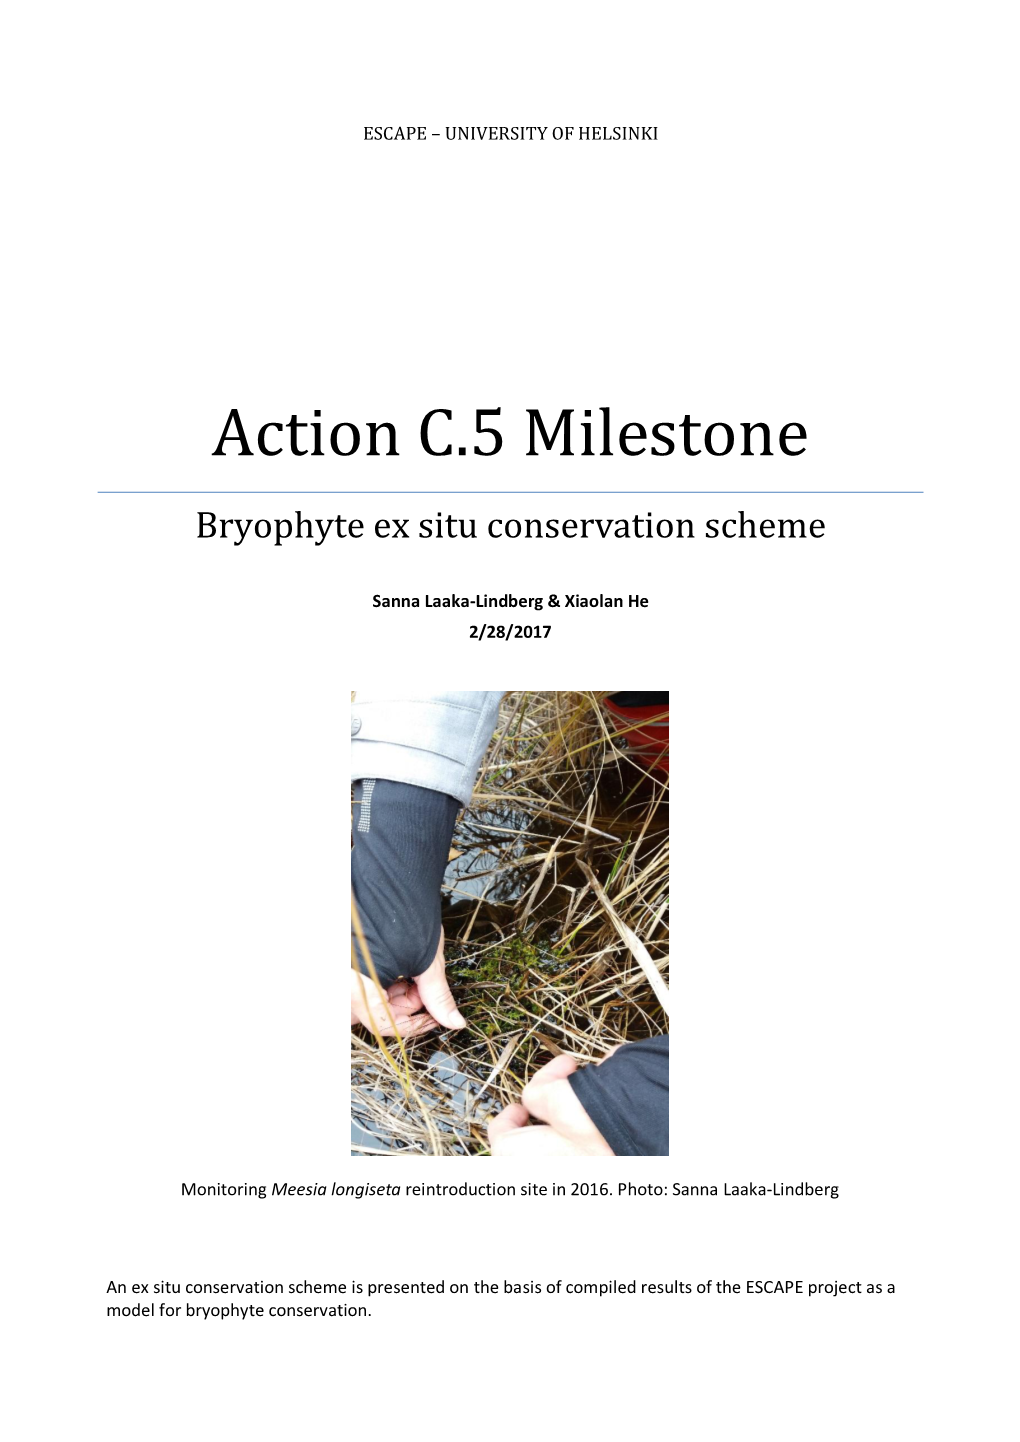 Action C.5 Milestone: Bryophyte Ex Situ Conservation Scheme Feb 2017